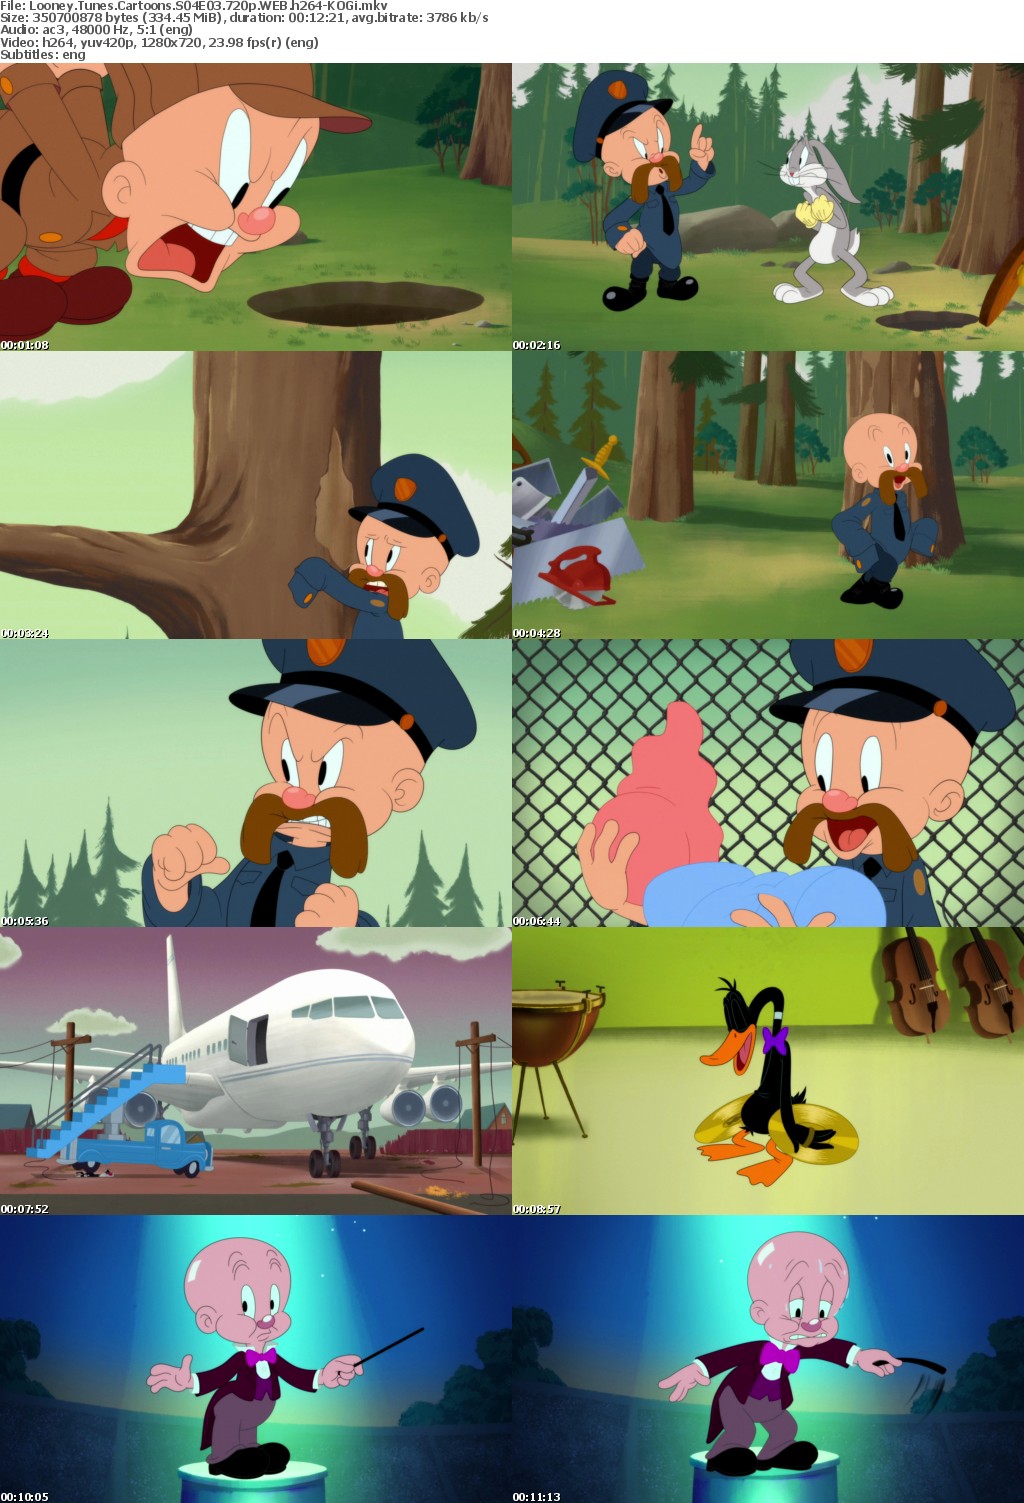 Looney Tunes Cartoons S04E03 720p WEB h264-KOGi